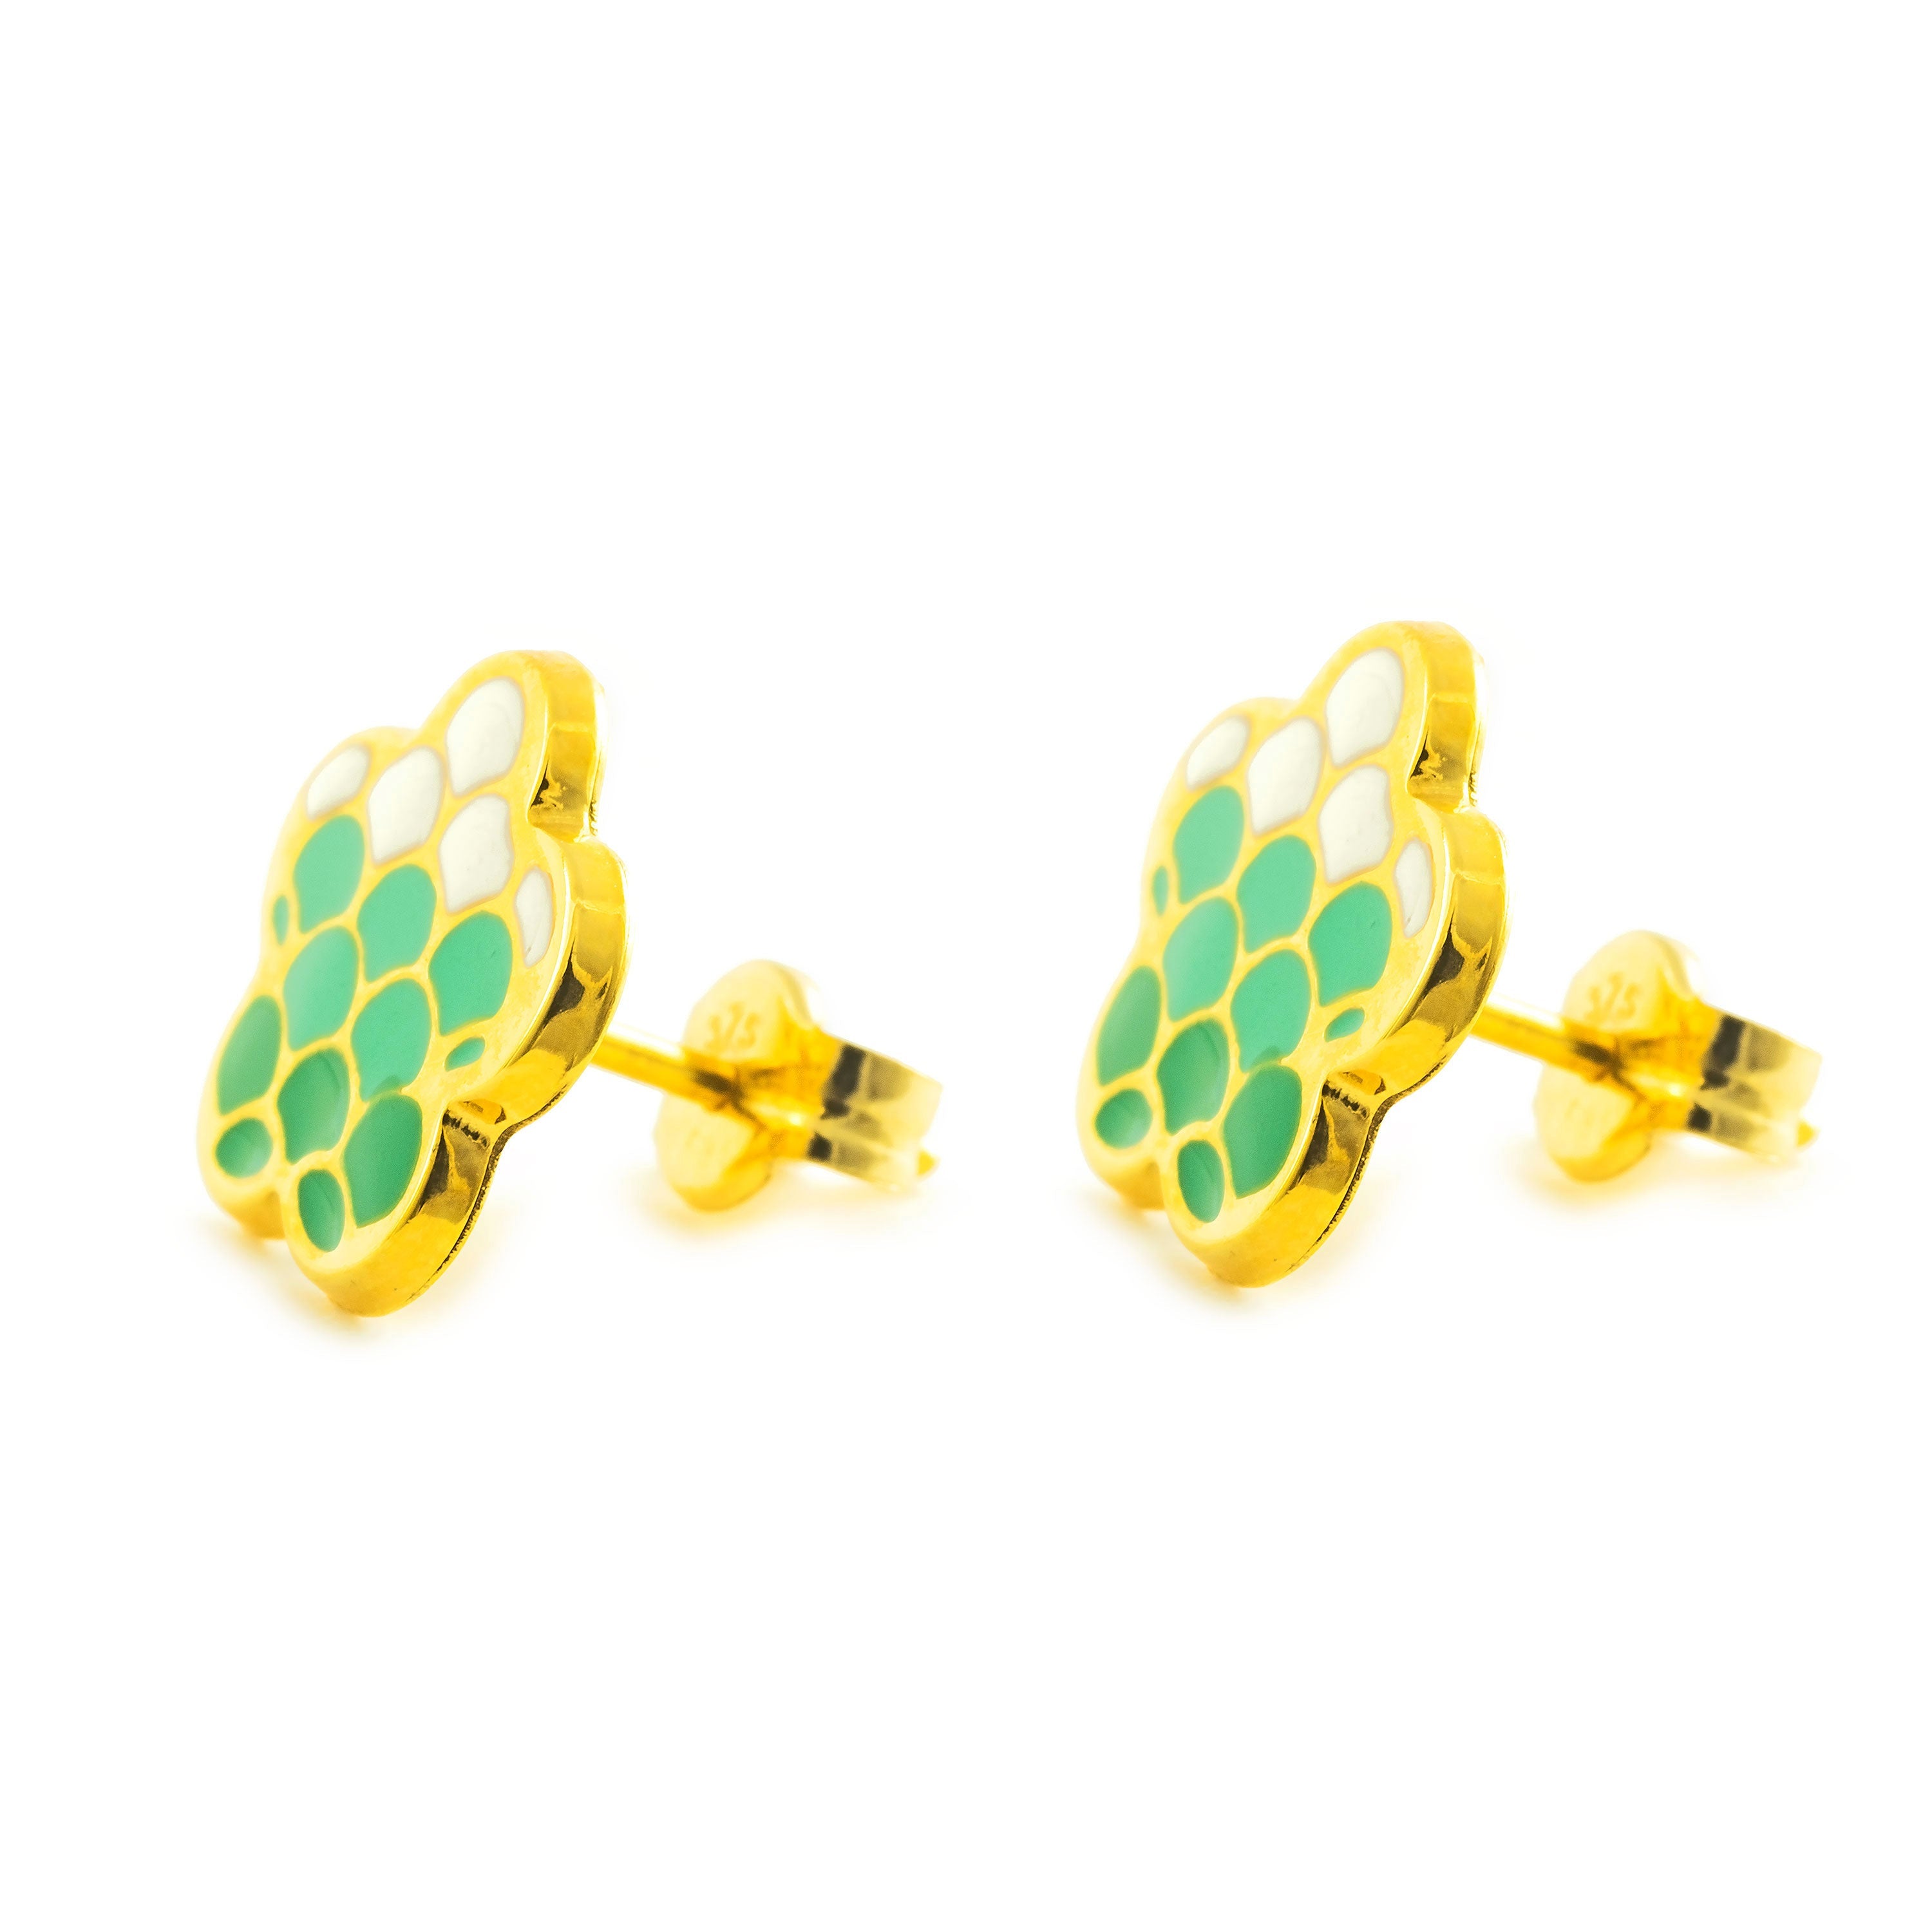 Women's-Girl's Earrings 9K Yellow Gold Shiny Green Enamel Flower